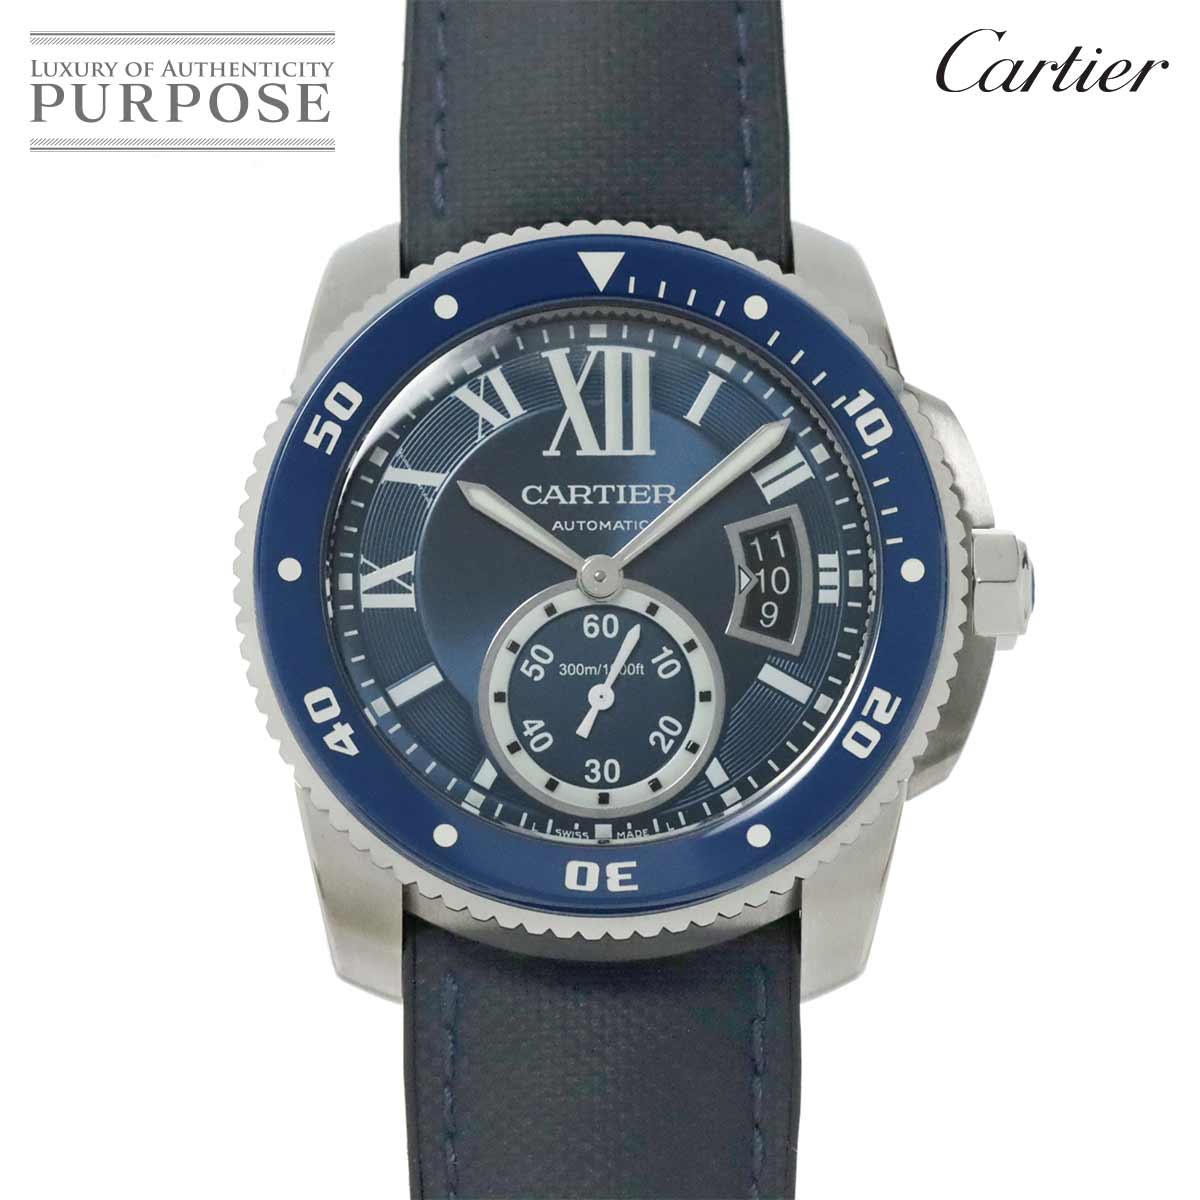 カルティエ Cartier カリブル ドゥ カルティエ ダイバー WSCA0010 メンズ 腕時計 デイト ブルー 自動巻き Calibre de Cartier Diver 